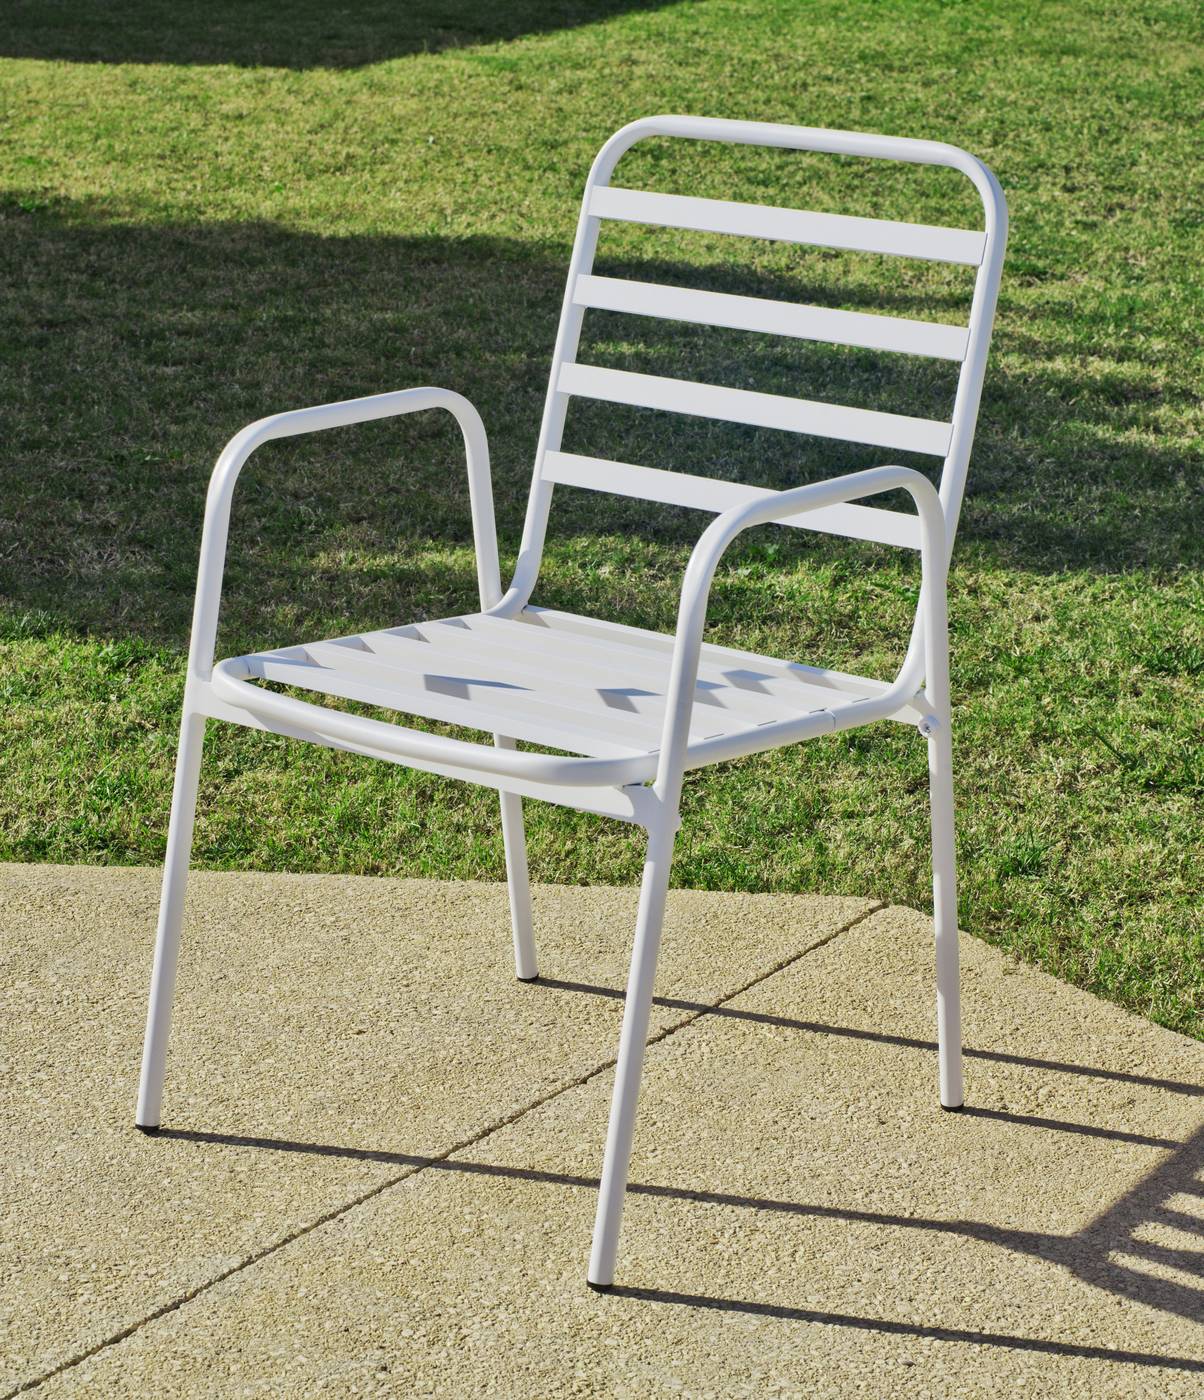 Set Aluminio Melea-Maxim 80-4 - Conjunto apilable de aluminio luxe: mesa cuadrada de 80 cm. + 4 sillones. Disponible en color blanco y color antracita.